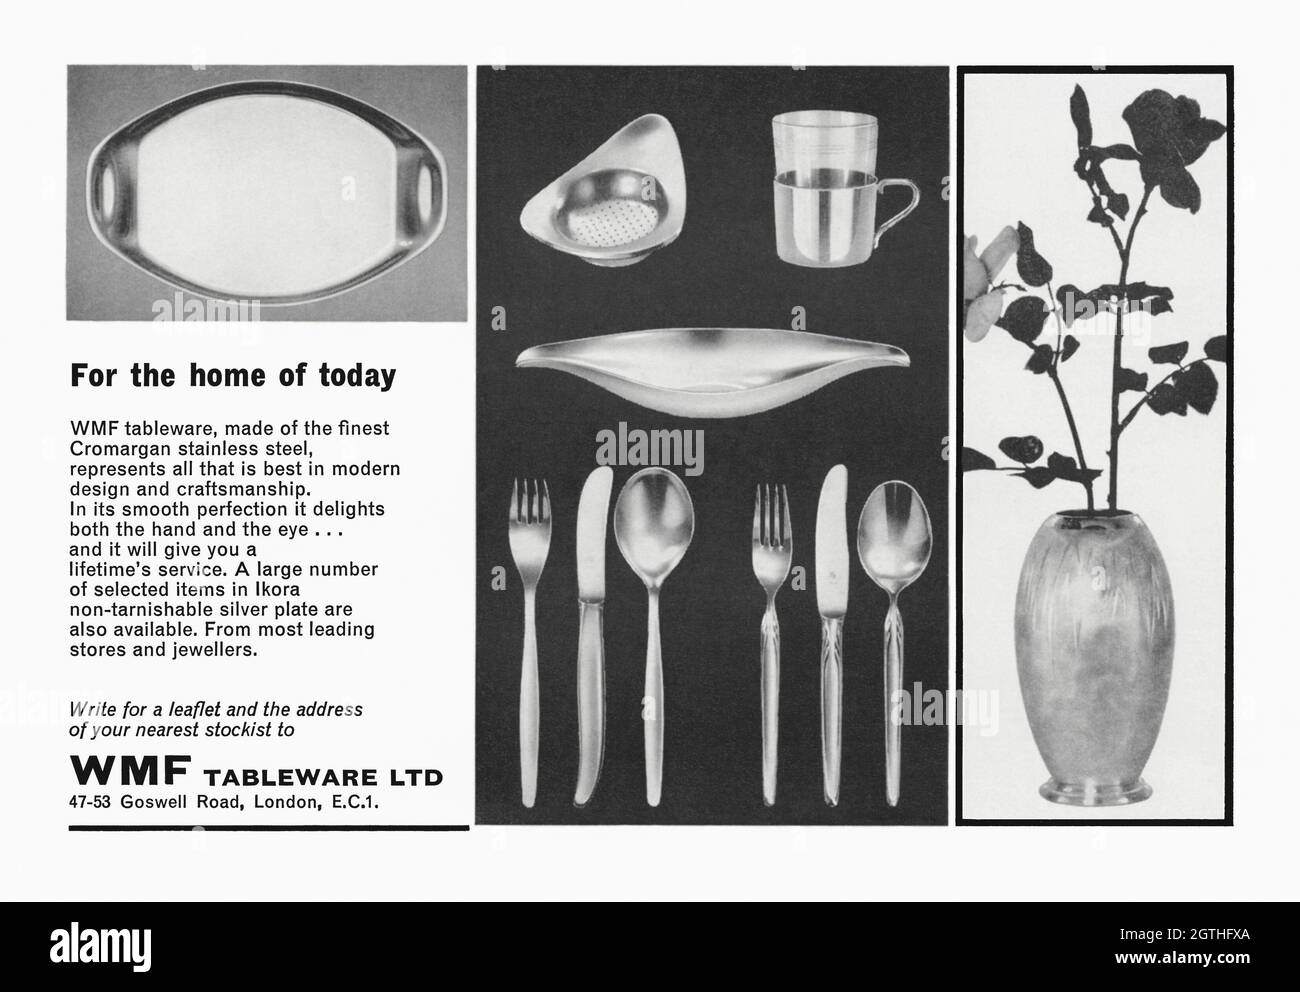 Un annuncio degli anni '60 per le stoviglie in metallo WMF. L'annuncio è  apparso in una rivista pubblicata nel Regno Unito nell'ottobre 1962. Le  fotografie mostrano esempi di posate, piatti e vasi.